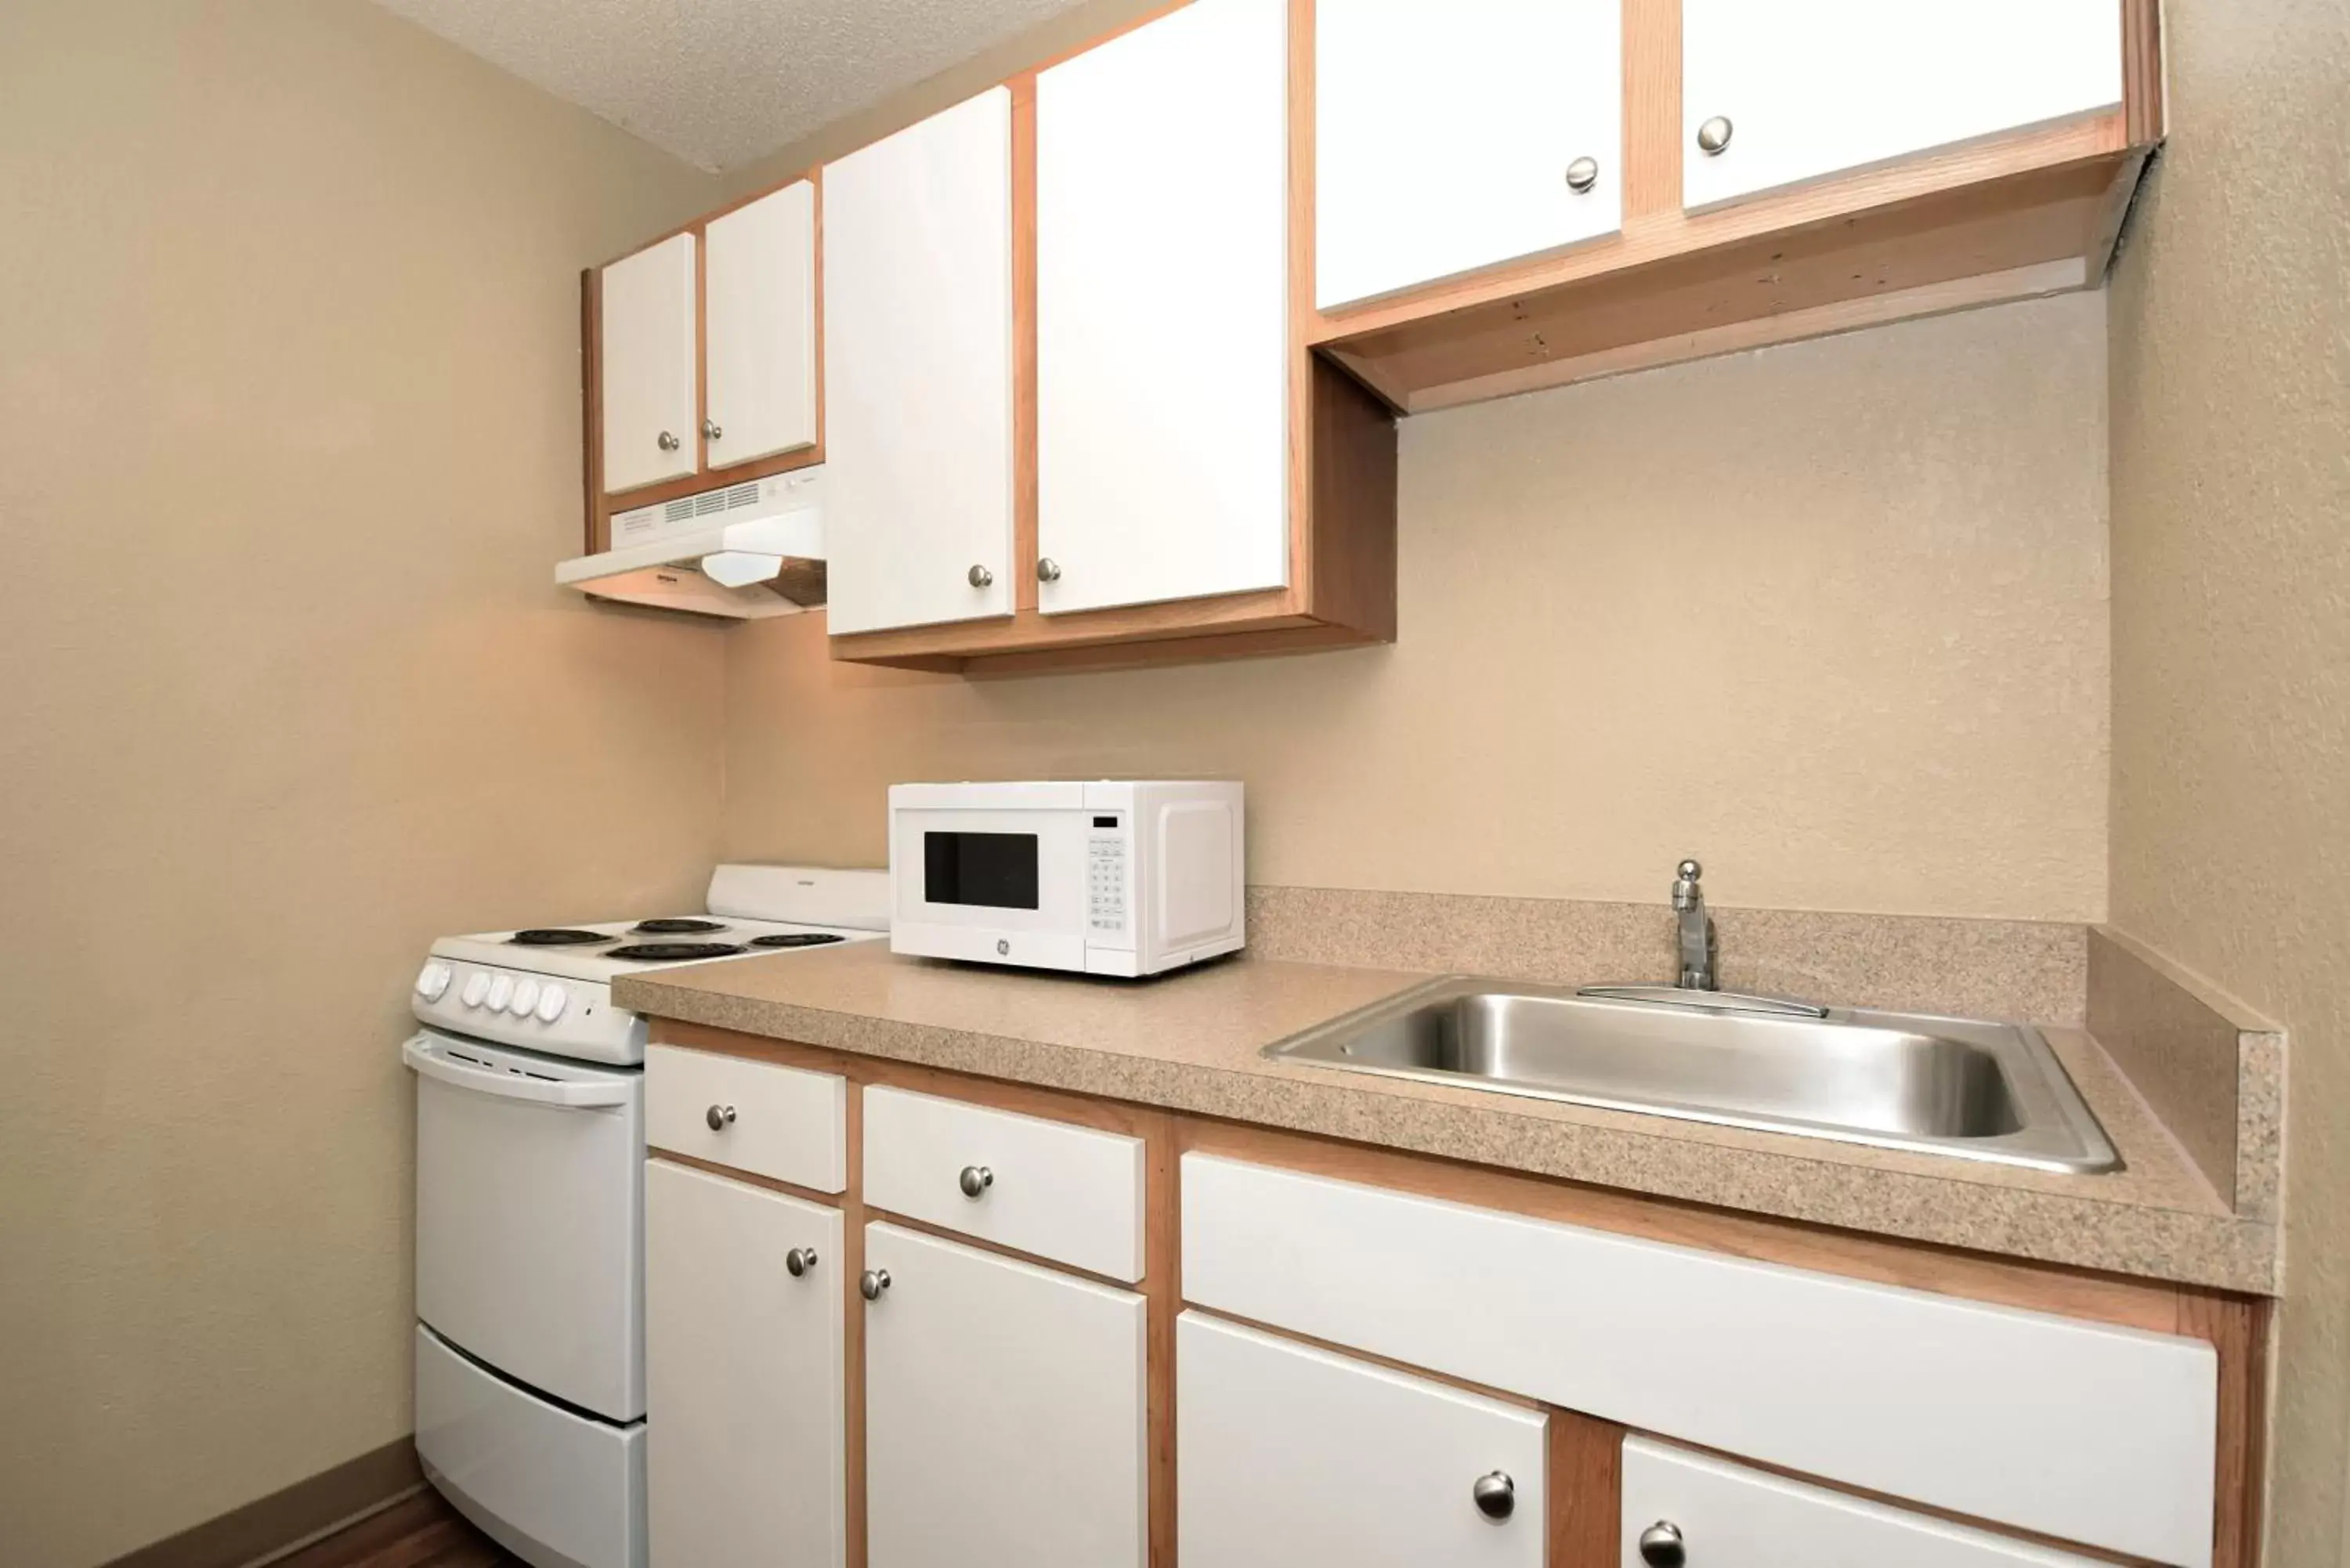 Kitchen or kitchenette, Kitchen/Kitchenette in Extended Stay America Suites - Tampa - Airport - Memorial Hwy